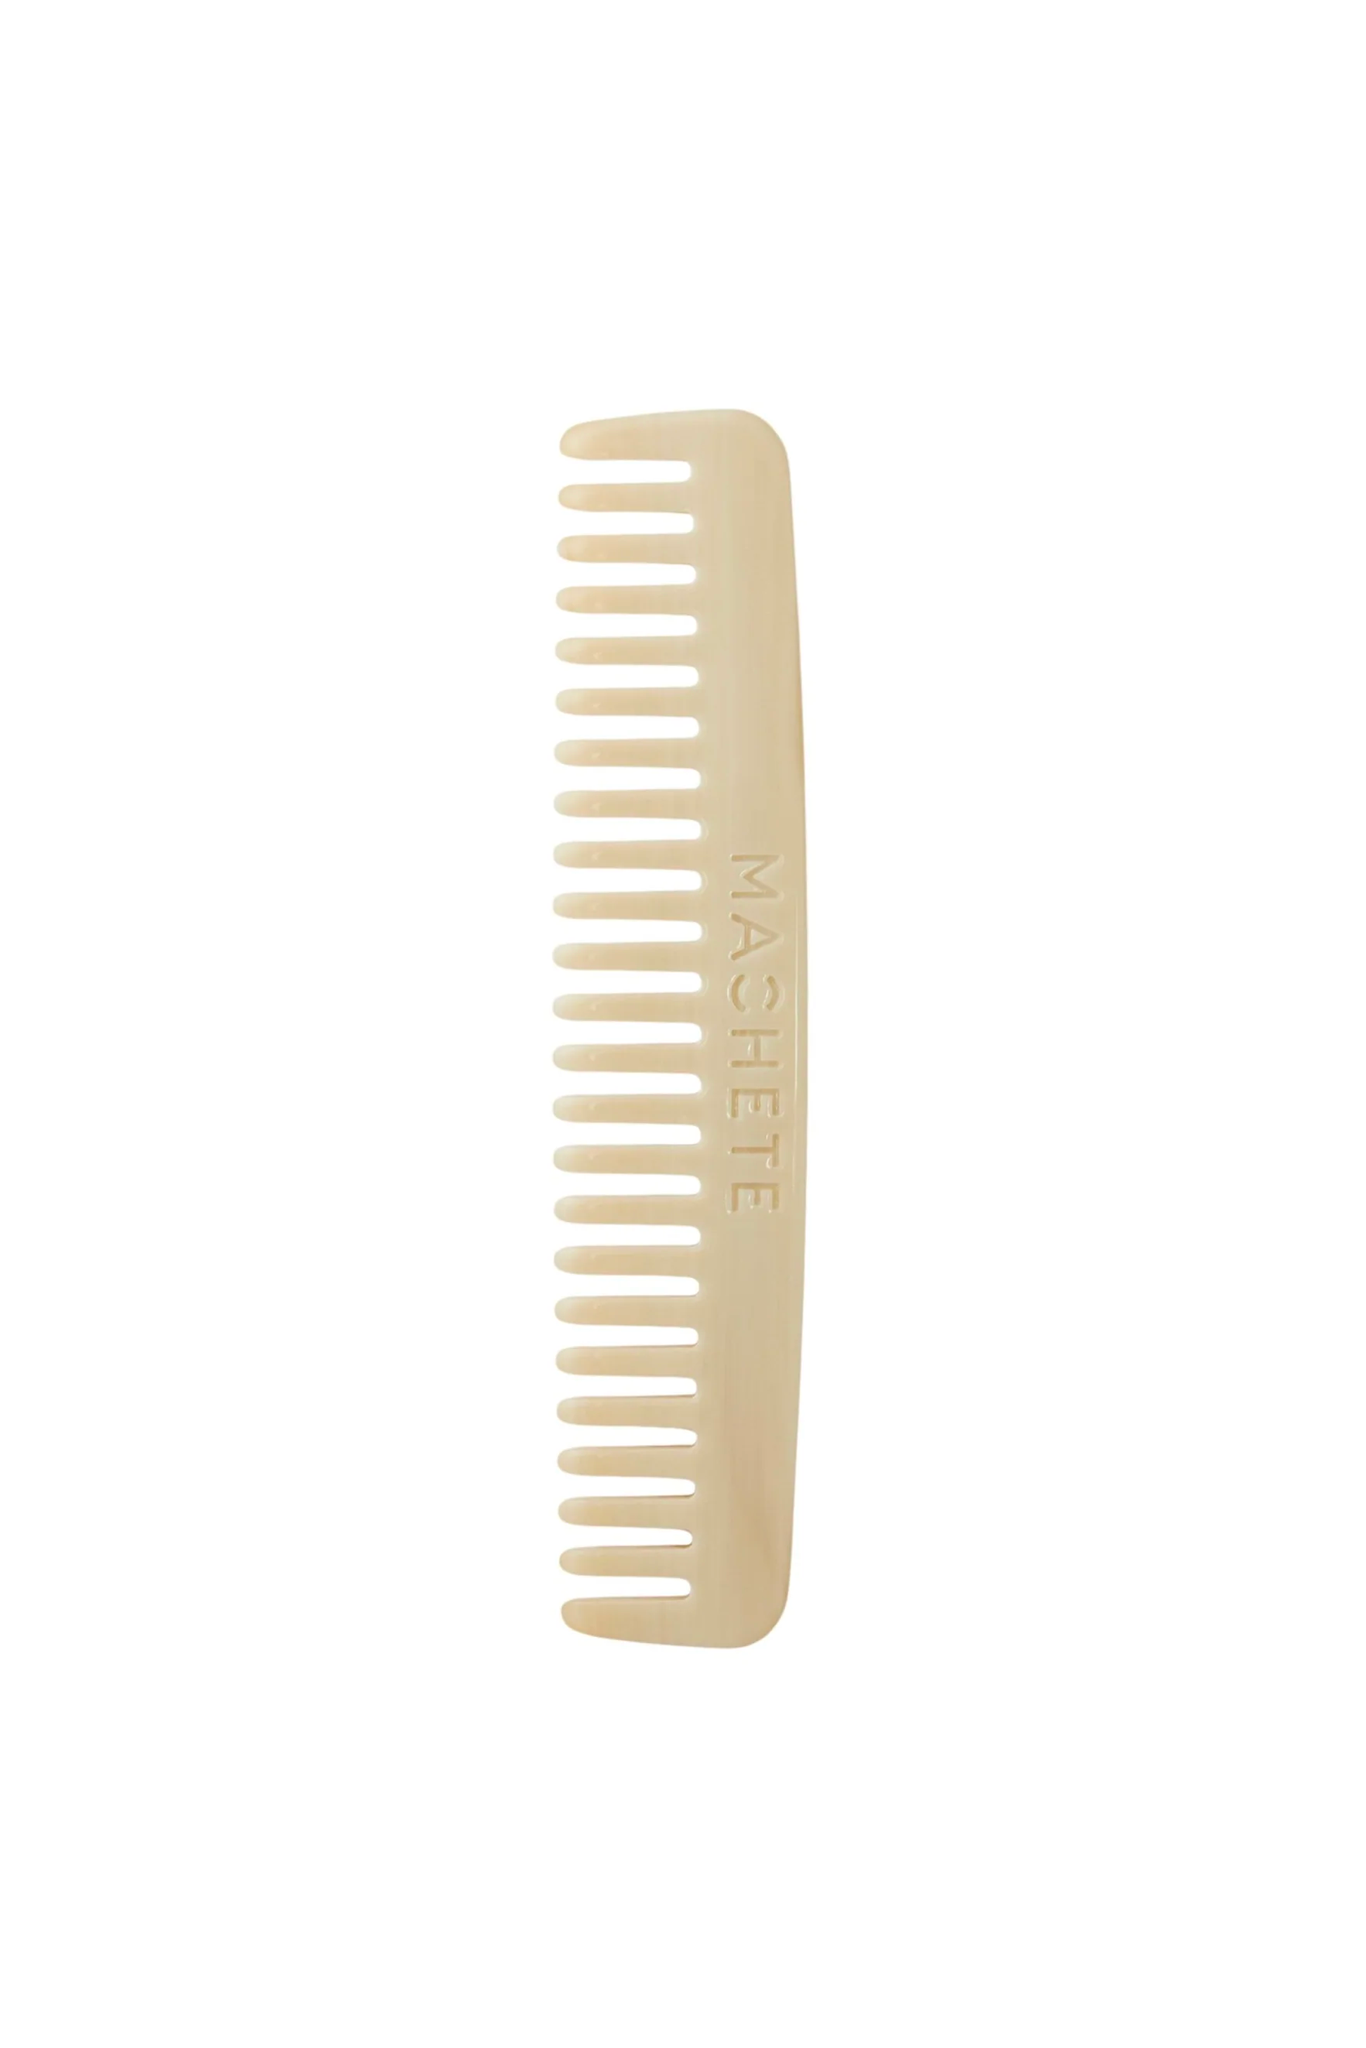 Alabaster No. 3 Comb